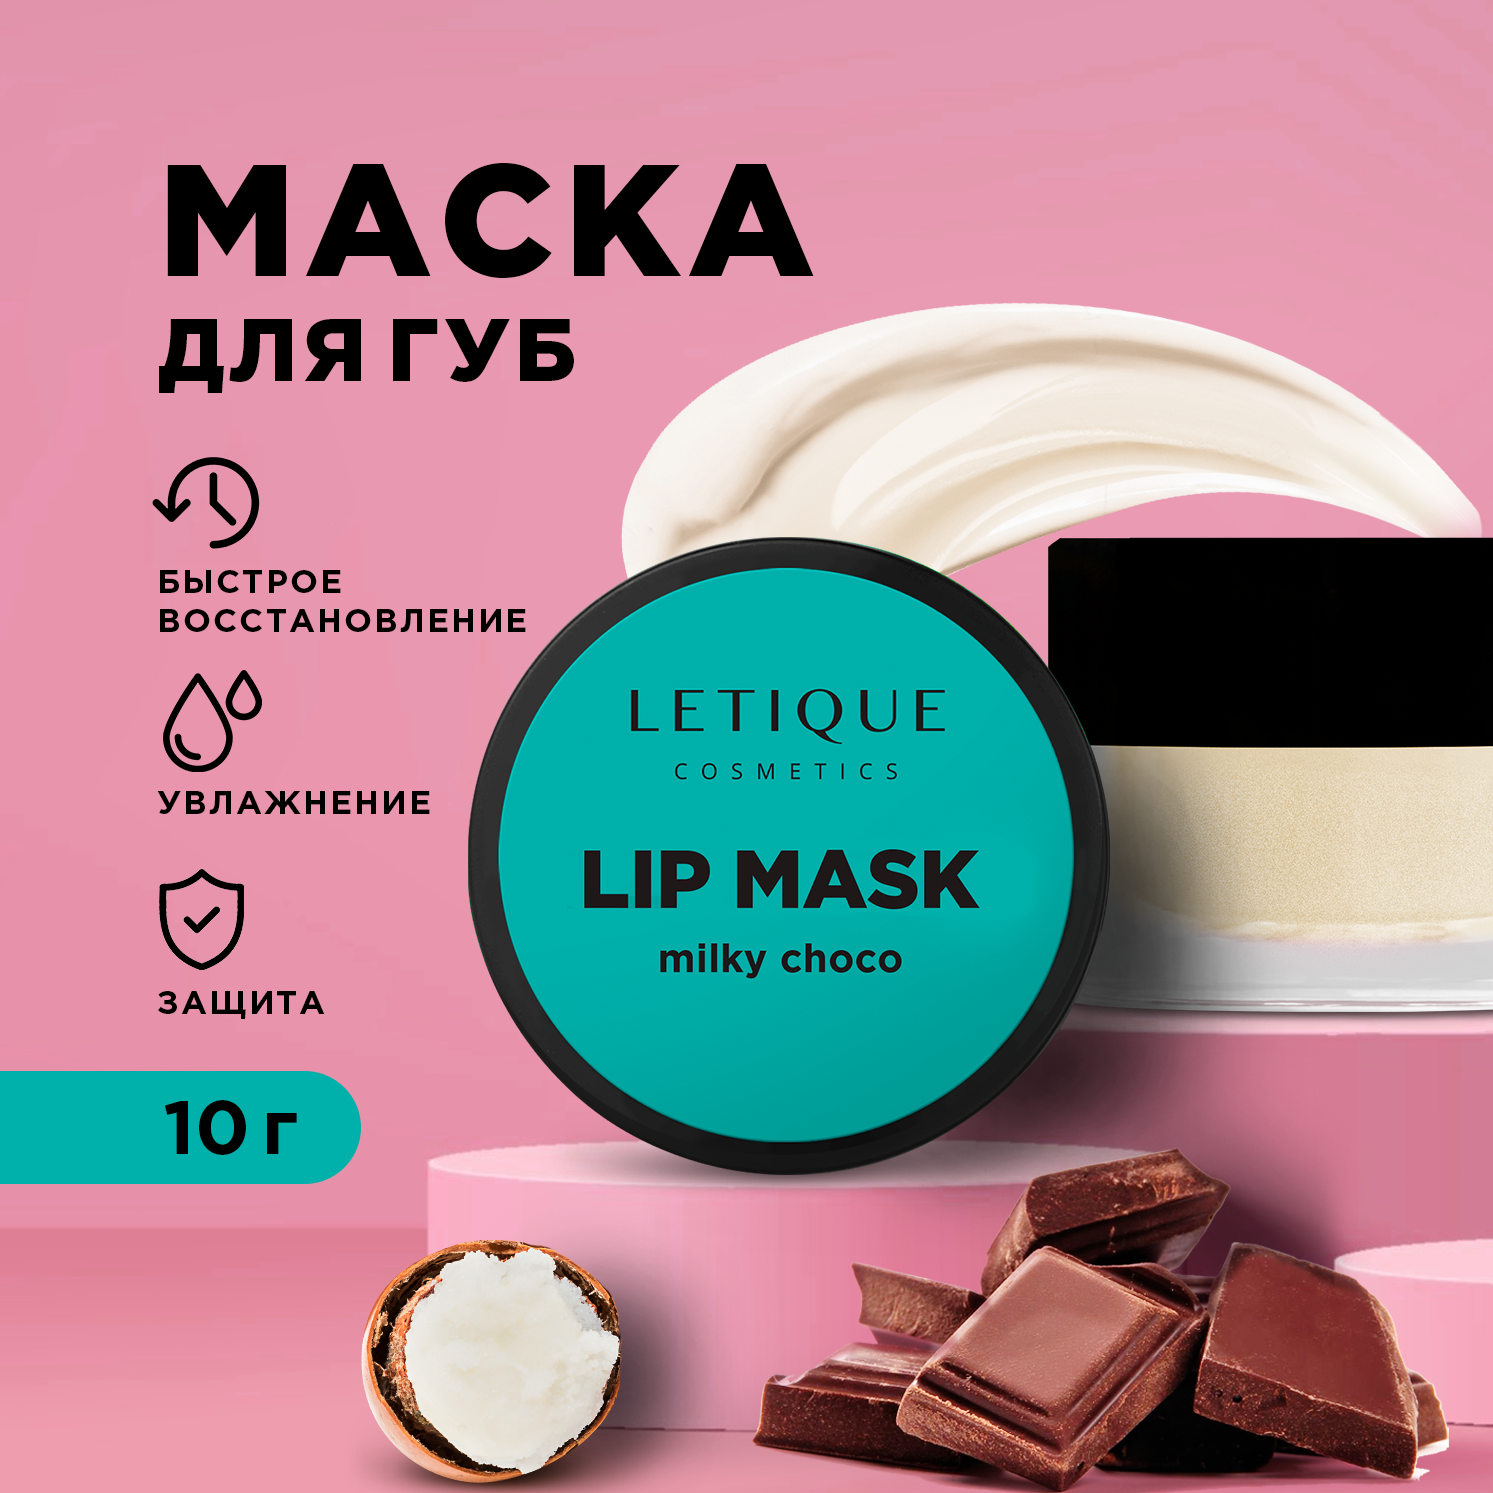 Маска для губ Letique Cosmetics Lip Mask Milky Choco 10 г asiaspa маска для лица с лифтинг эффектом тайский секрет от морщин отечности шоколад с корицей 10